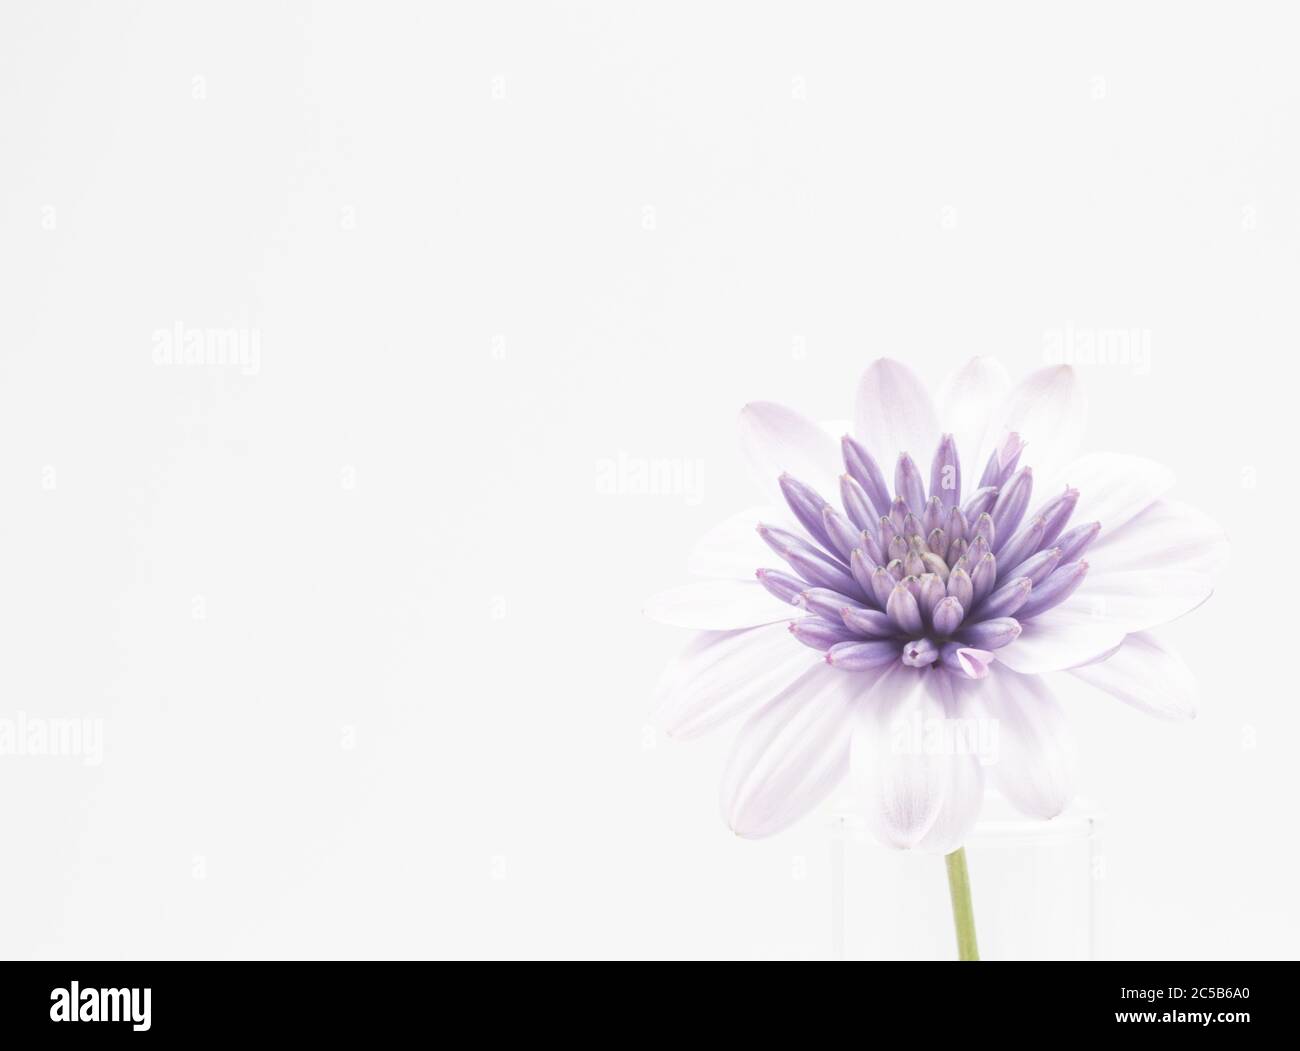 Nahaufnahme eines violetten Osteospermum isoliert auf einem weißen Hintergrund - perfekt für Tapeten Stockfoto